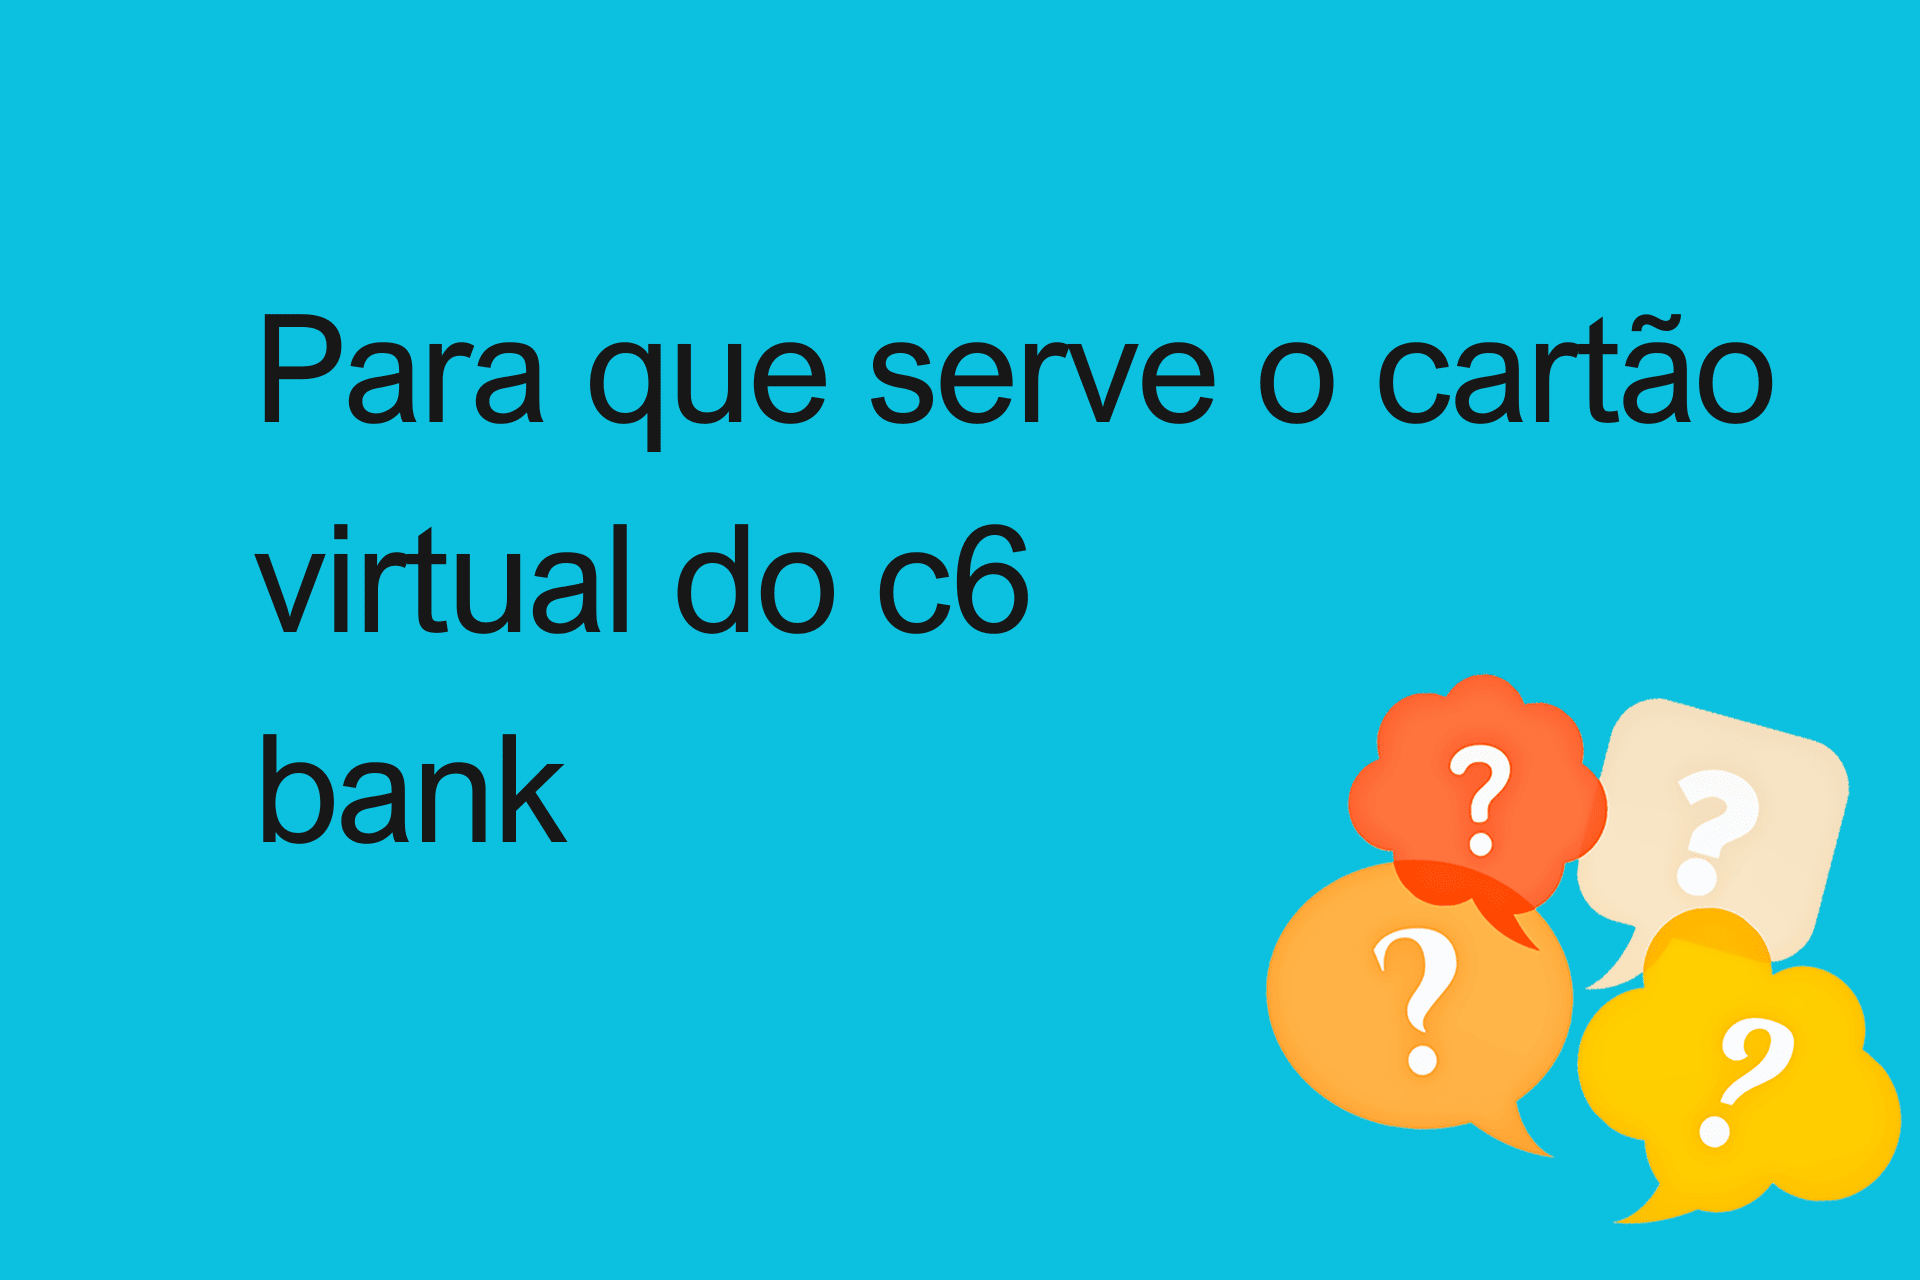 Para que serve o cartão virtual do c6 bank?